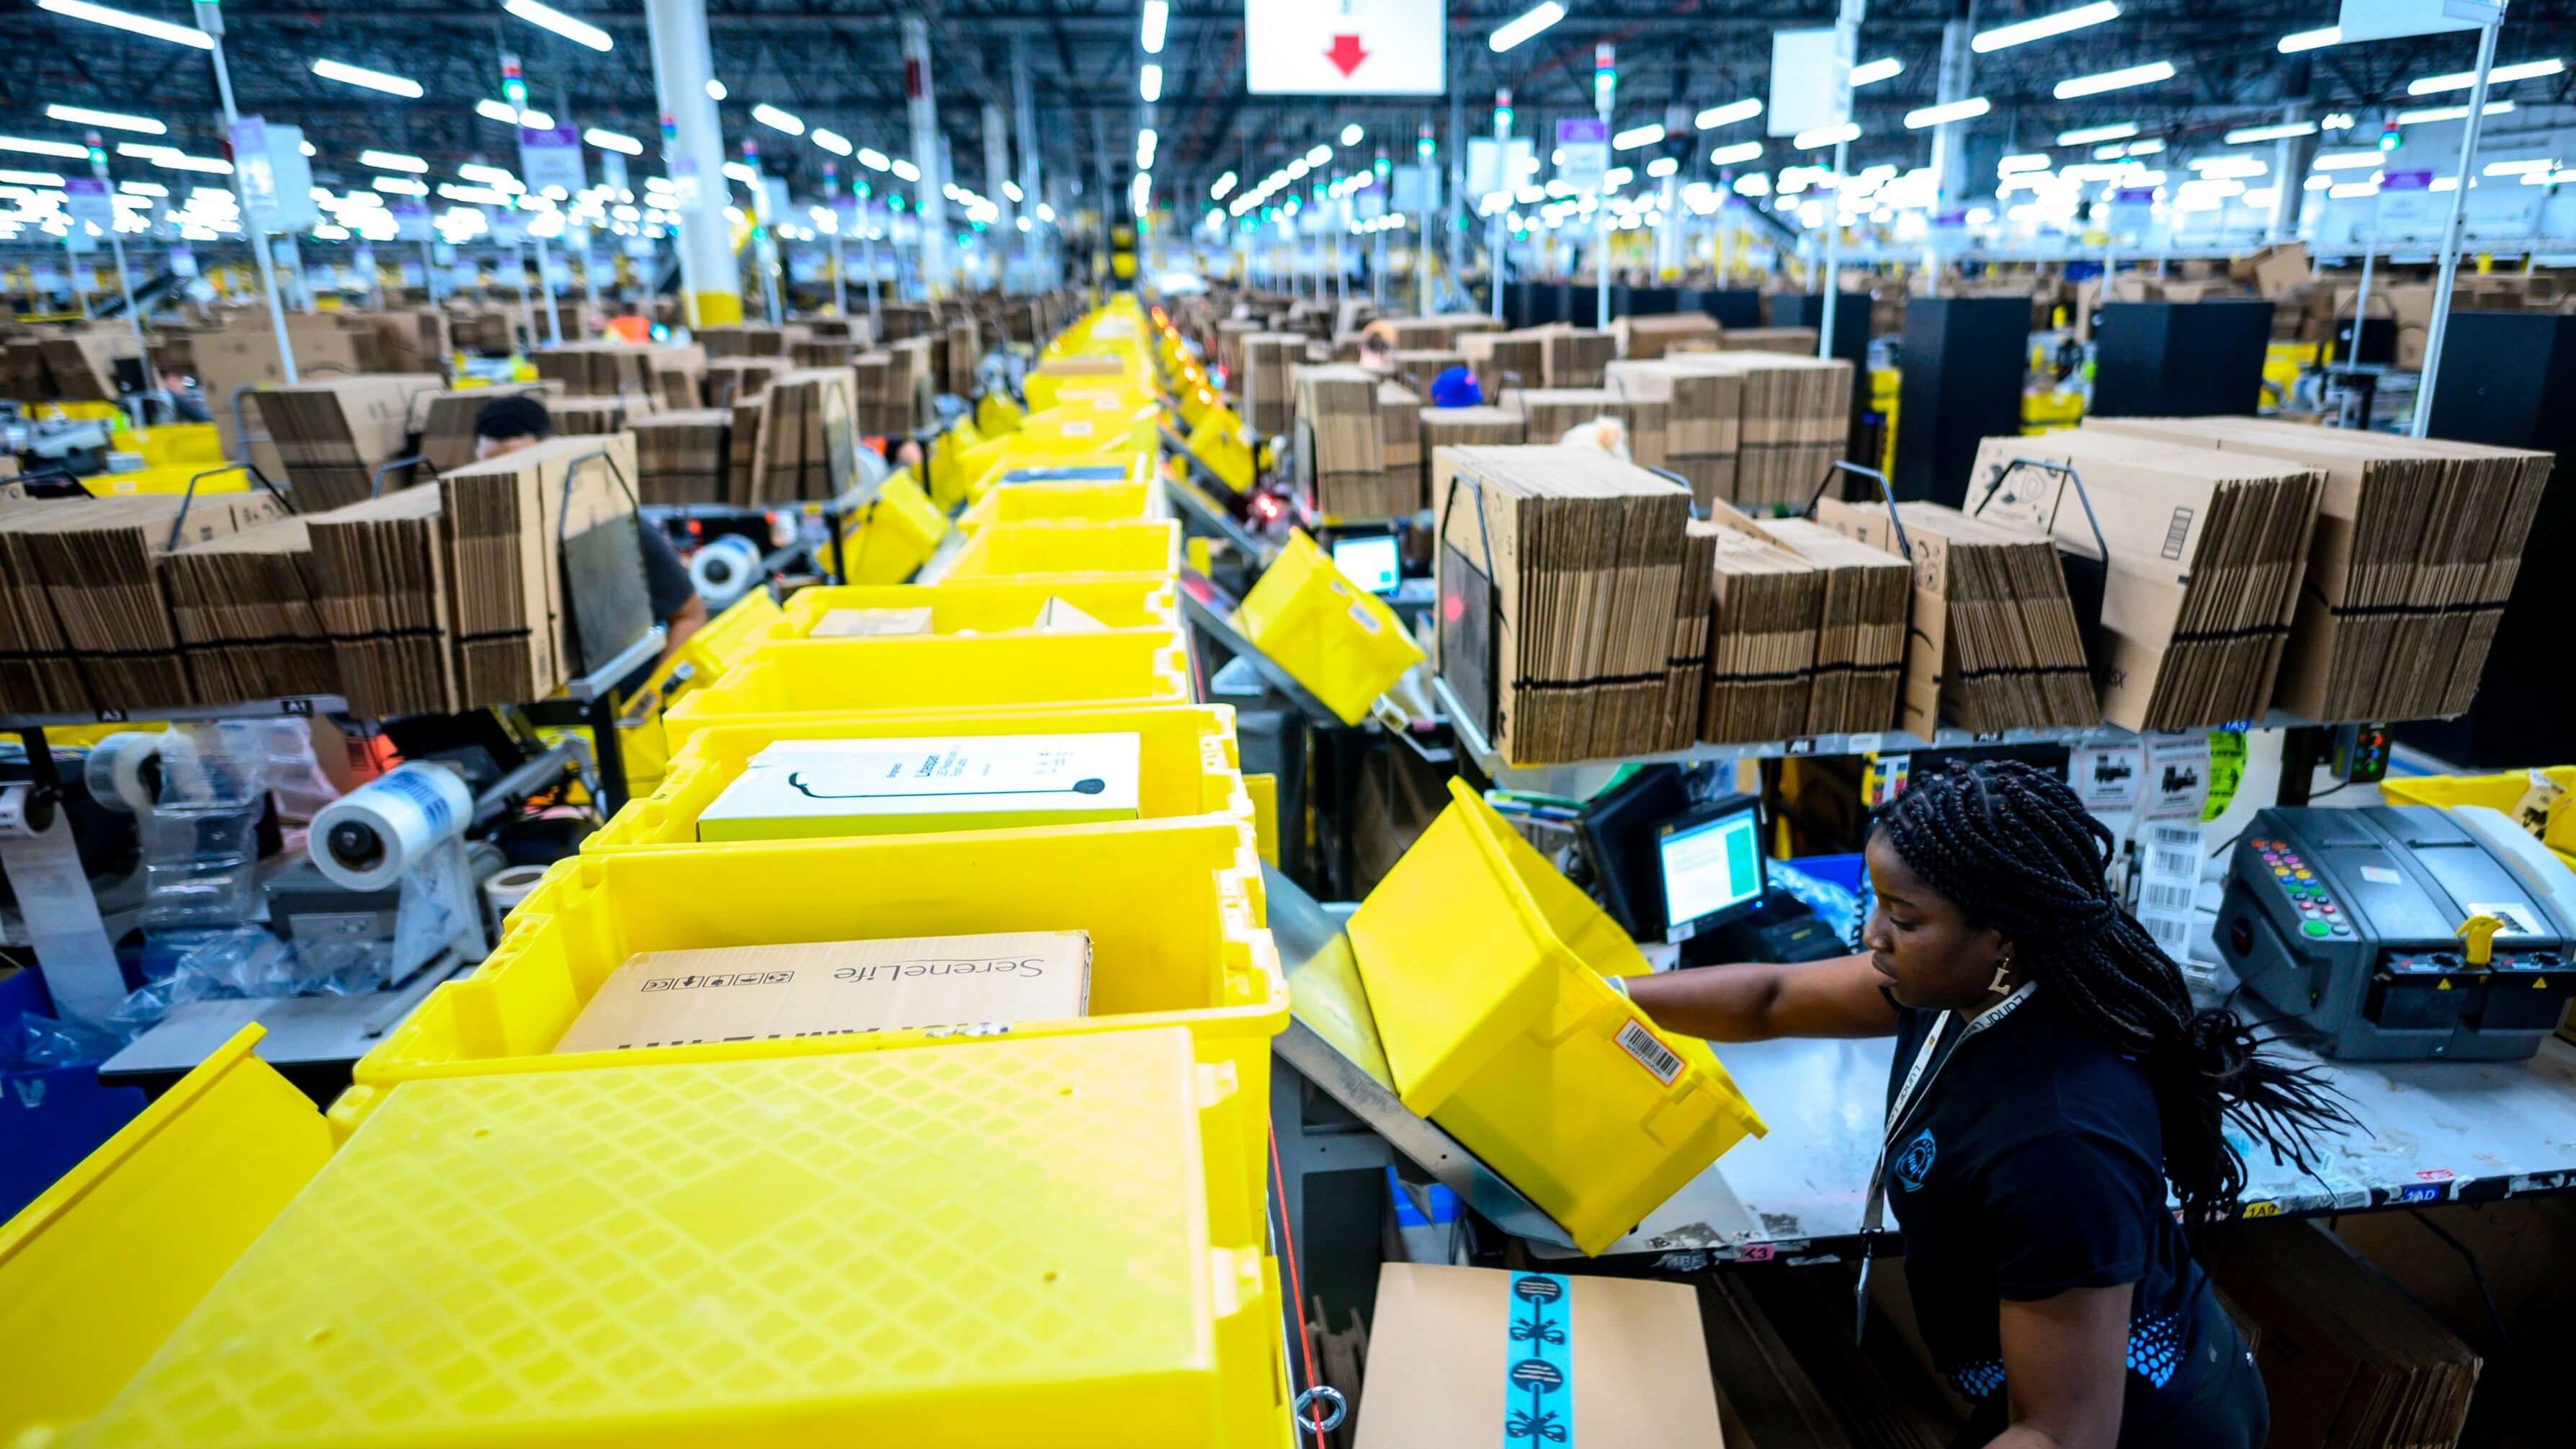 Le 5 février 2019, une femme travaille dans une station d'emballage du centre de remplissage Amazon de 855 000 pieds carrés à Staten Island, l'un des cinq arrondissements de la ville de New York. - Dans un immense entrepôt de Staten Island, des milliers de robots sont occupés à distribuer les milliers d'articles vendus par le géant de la vente en ligne, Amazon.